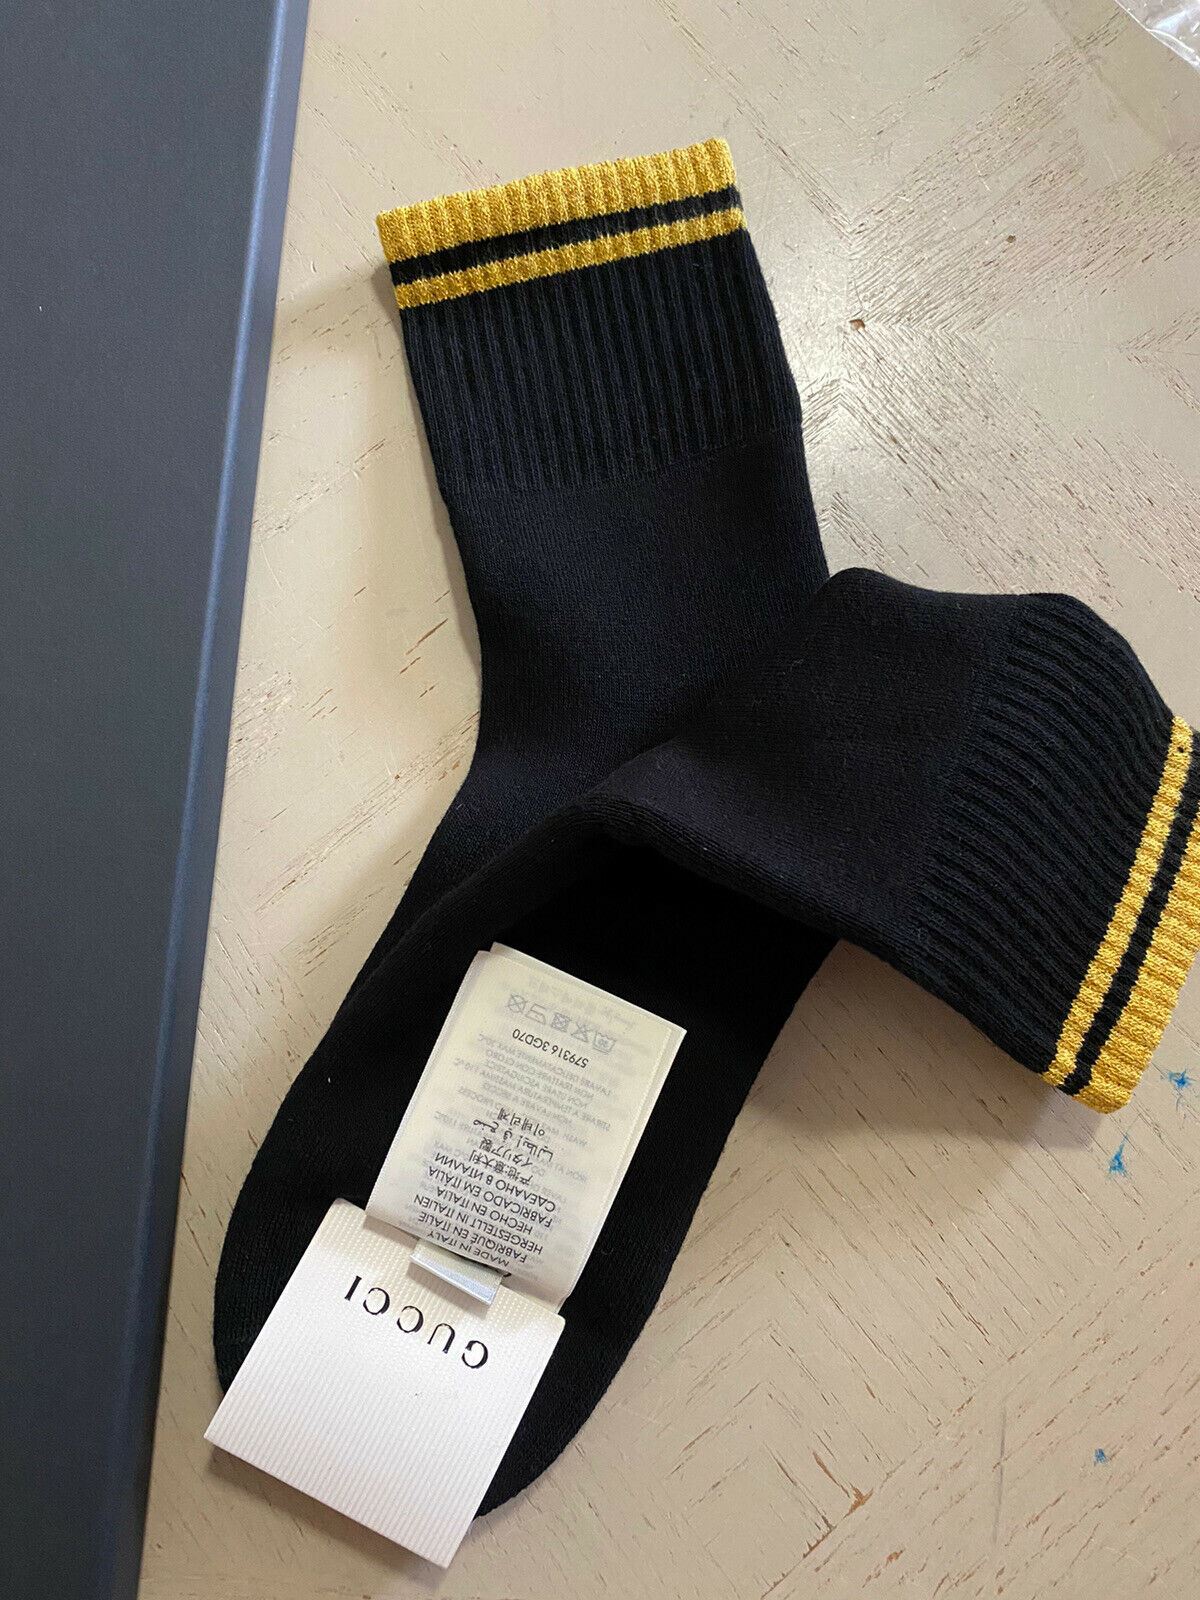 Хлопковые носки NWT Gucci с монограммой Gucci, черные, размер M, Италия